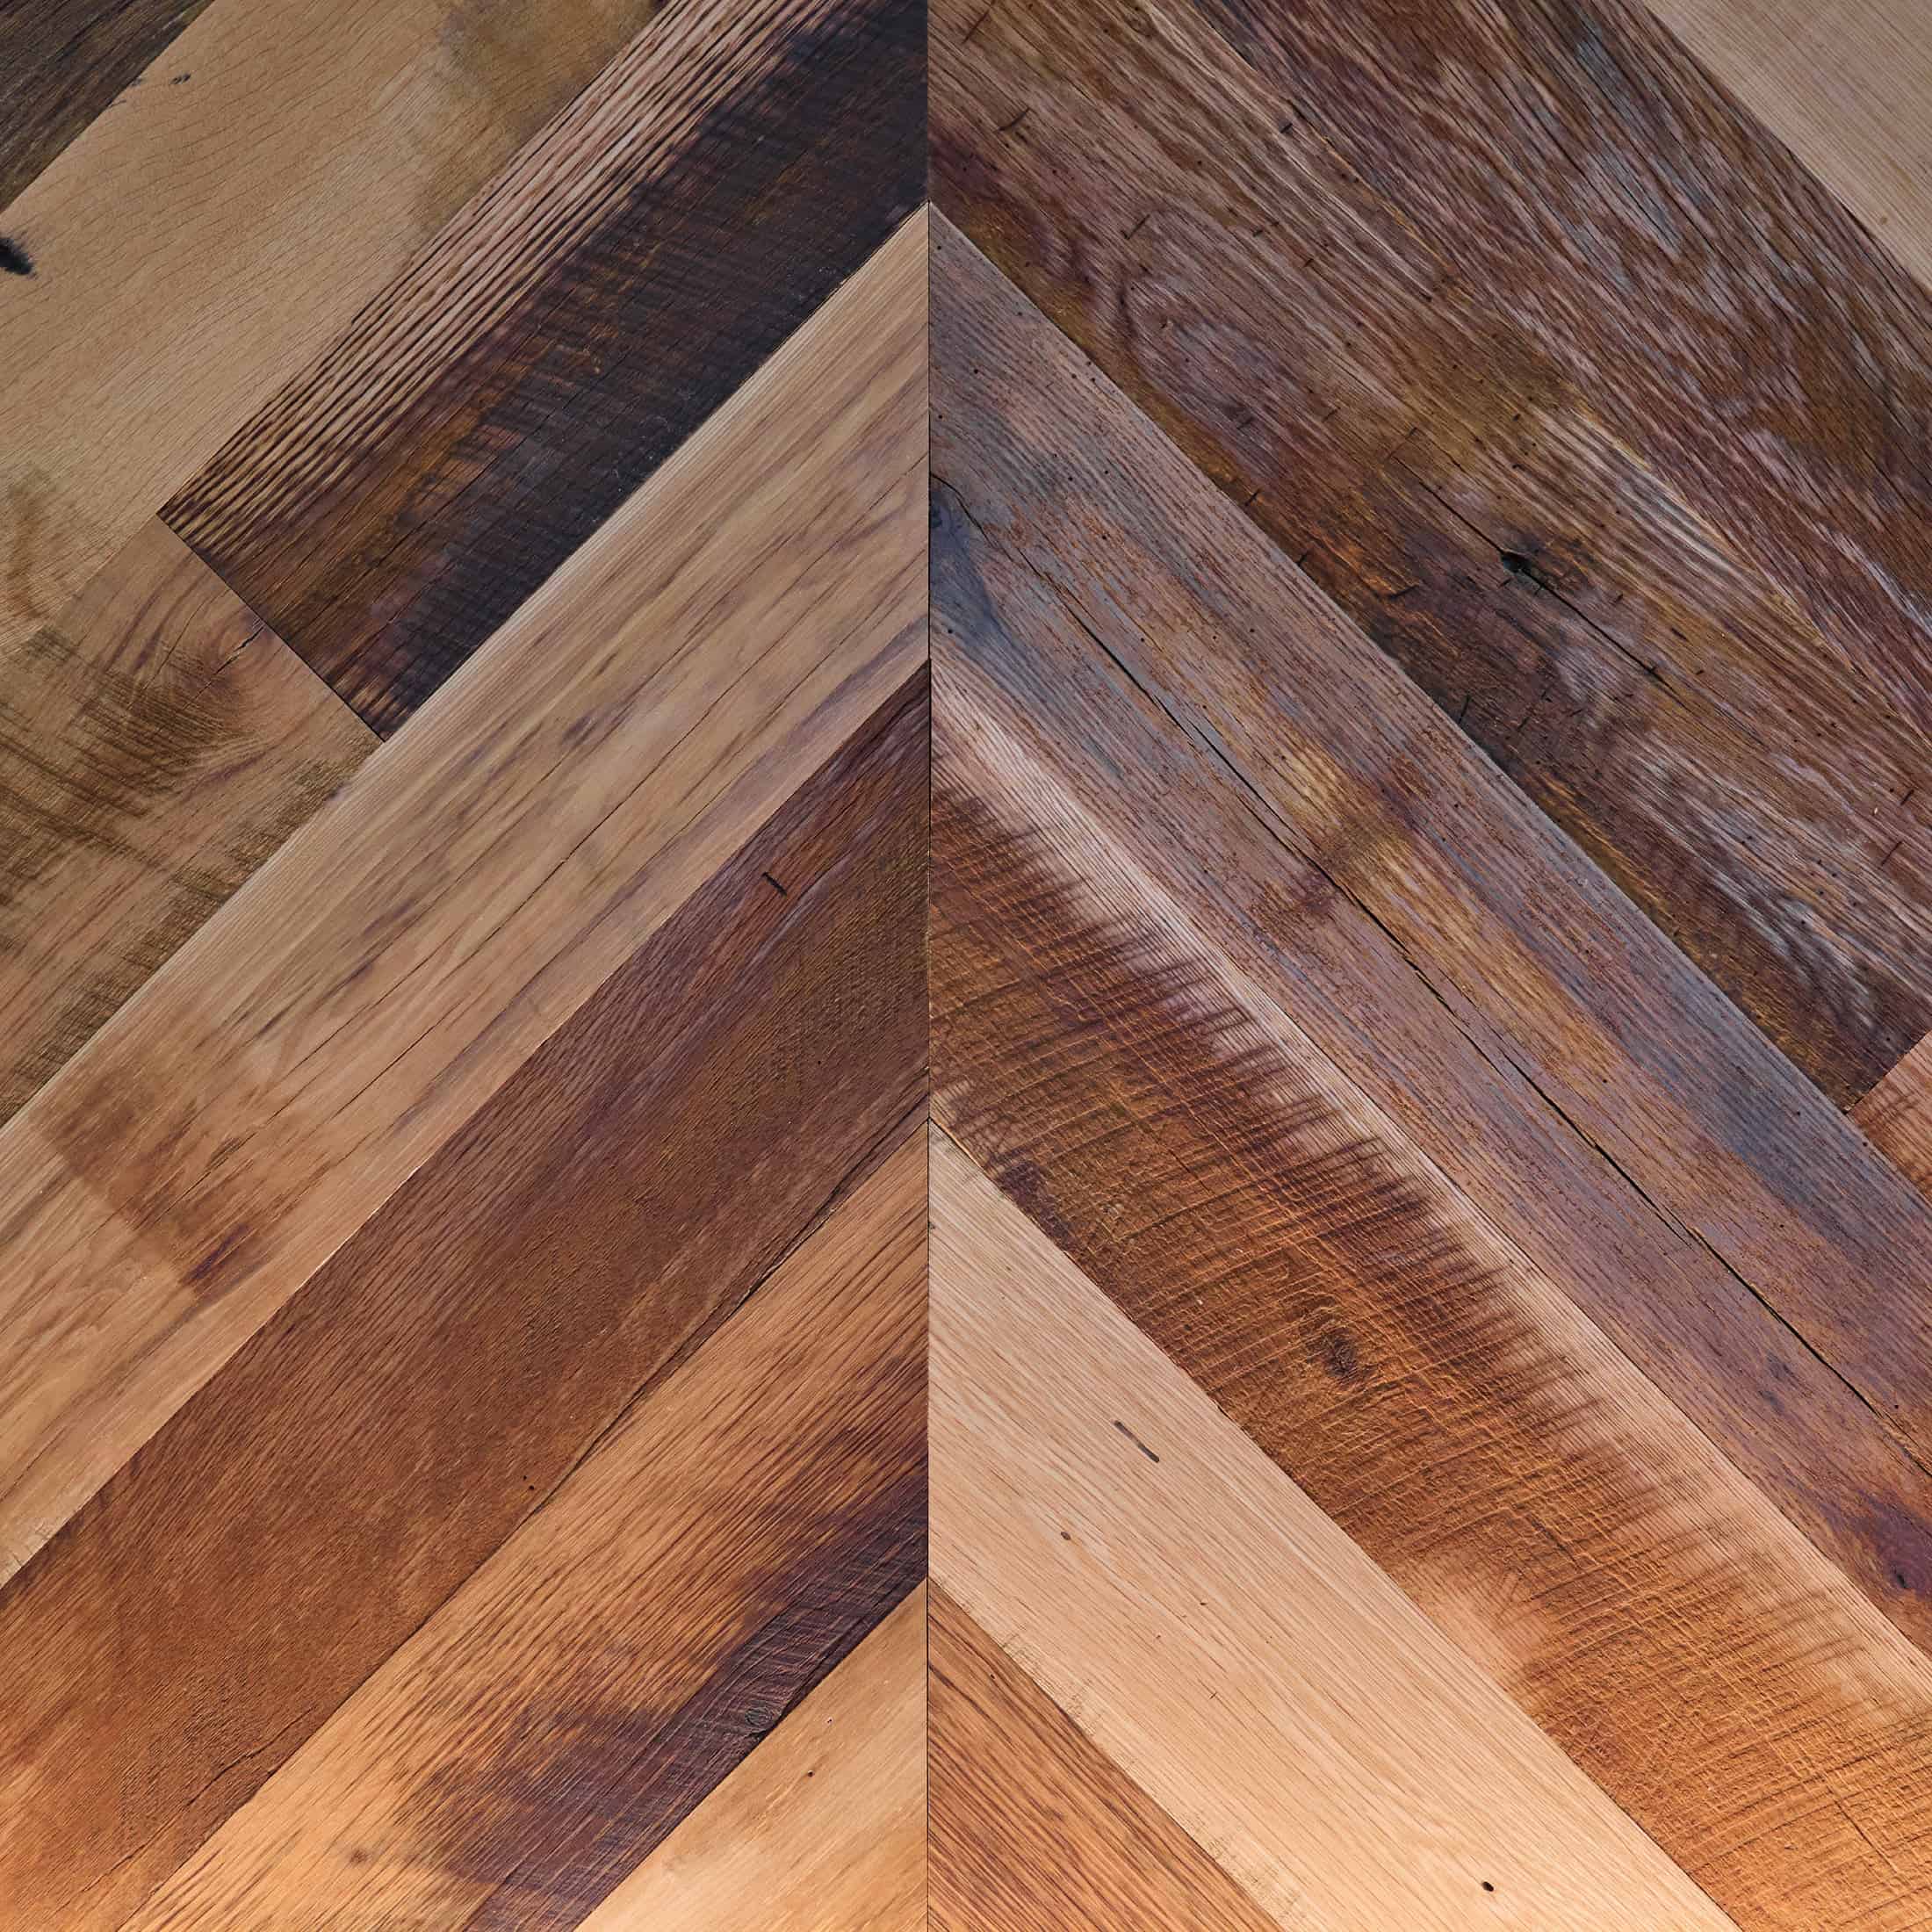 A close-up of wood wall texture that creates upward-facing chevrons